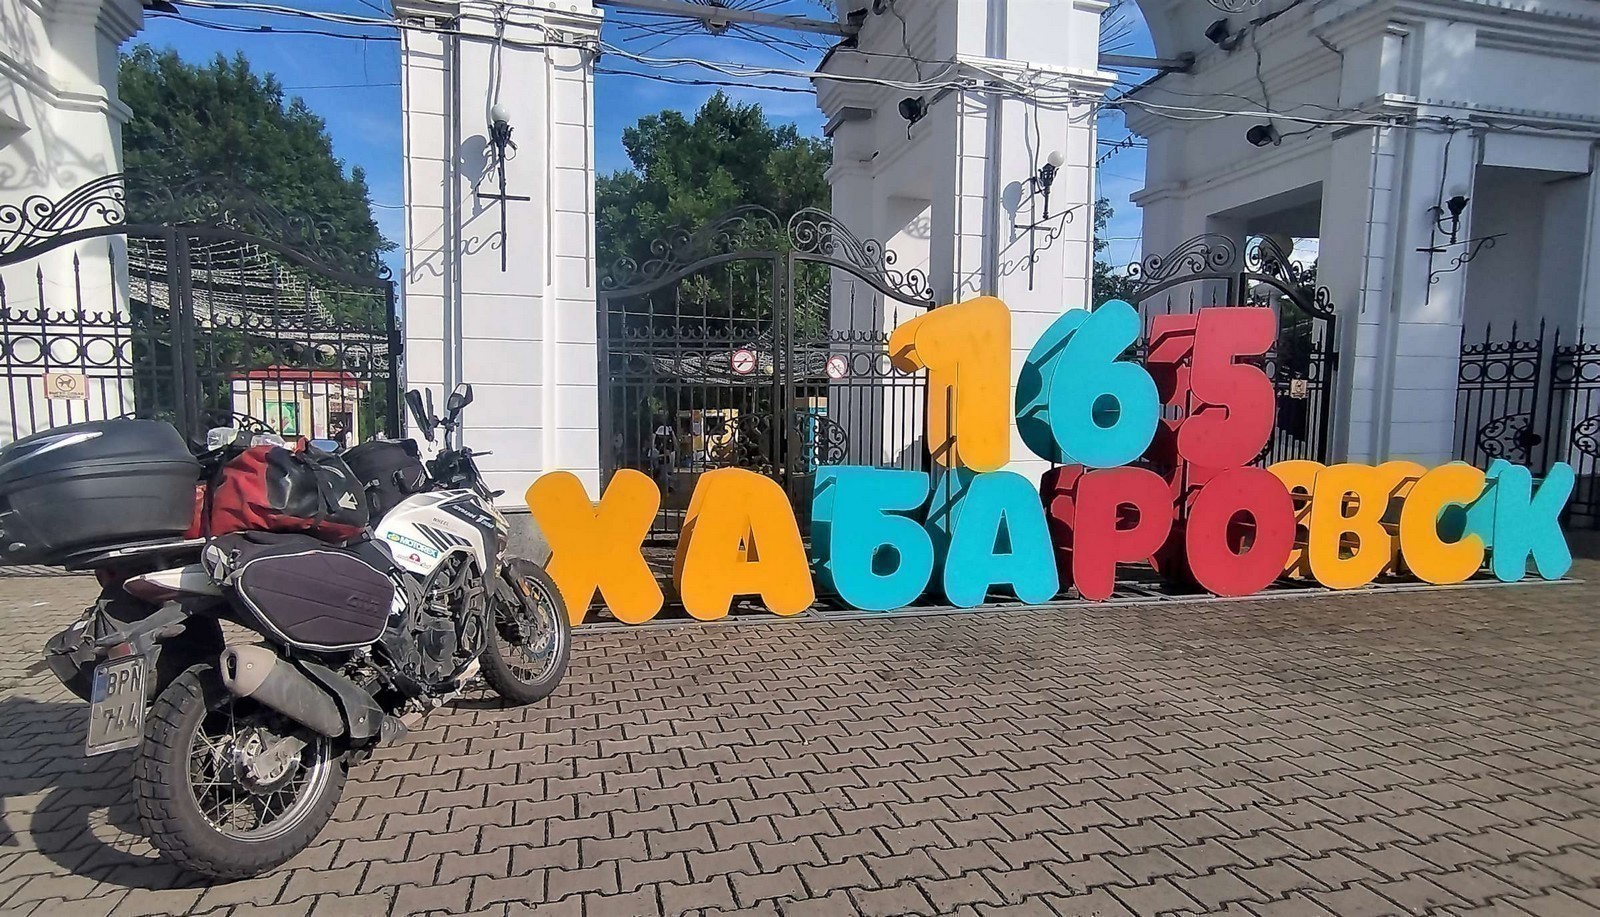 KHABAROVSK 2400